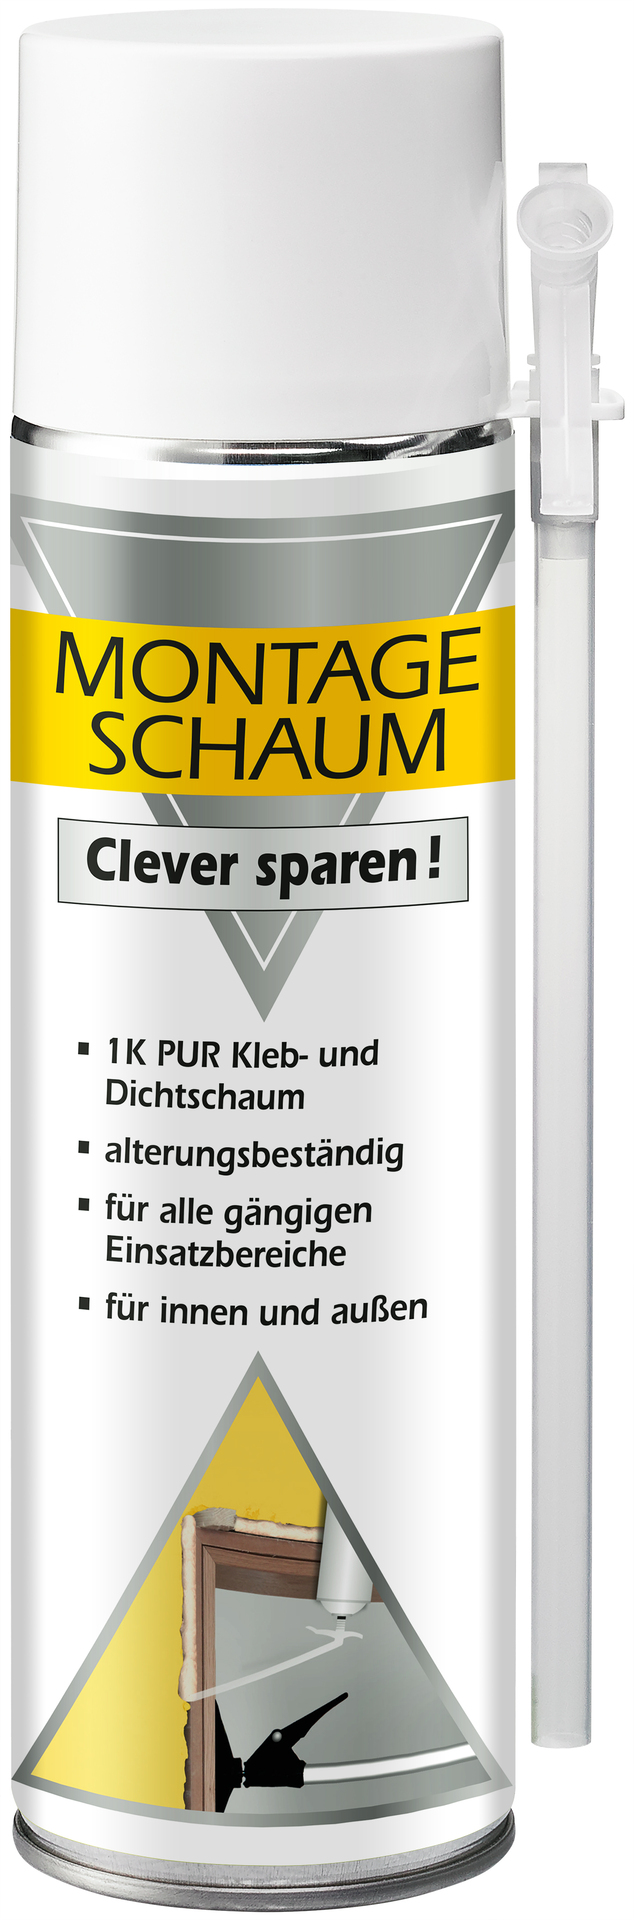 Pronova GmbH & Co.KG Clever Sparen Montageschaum